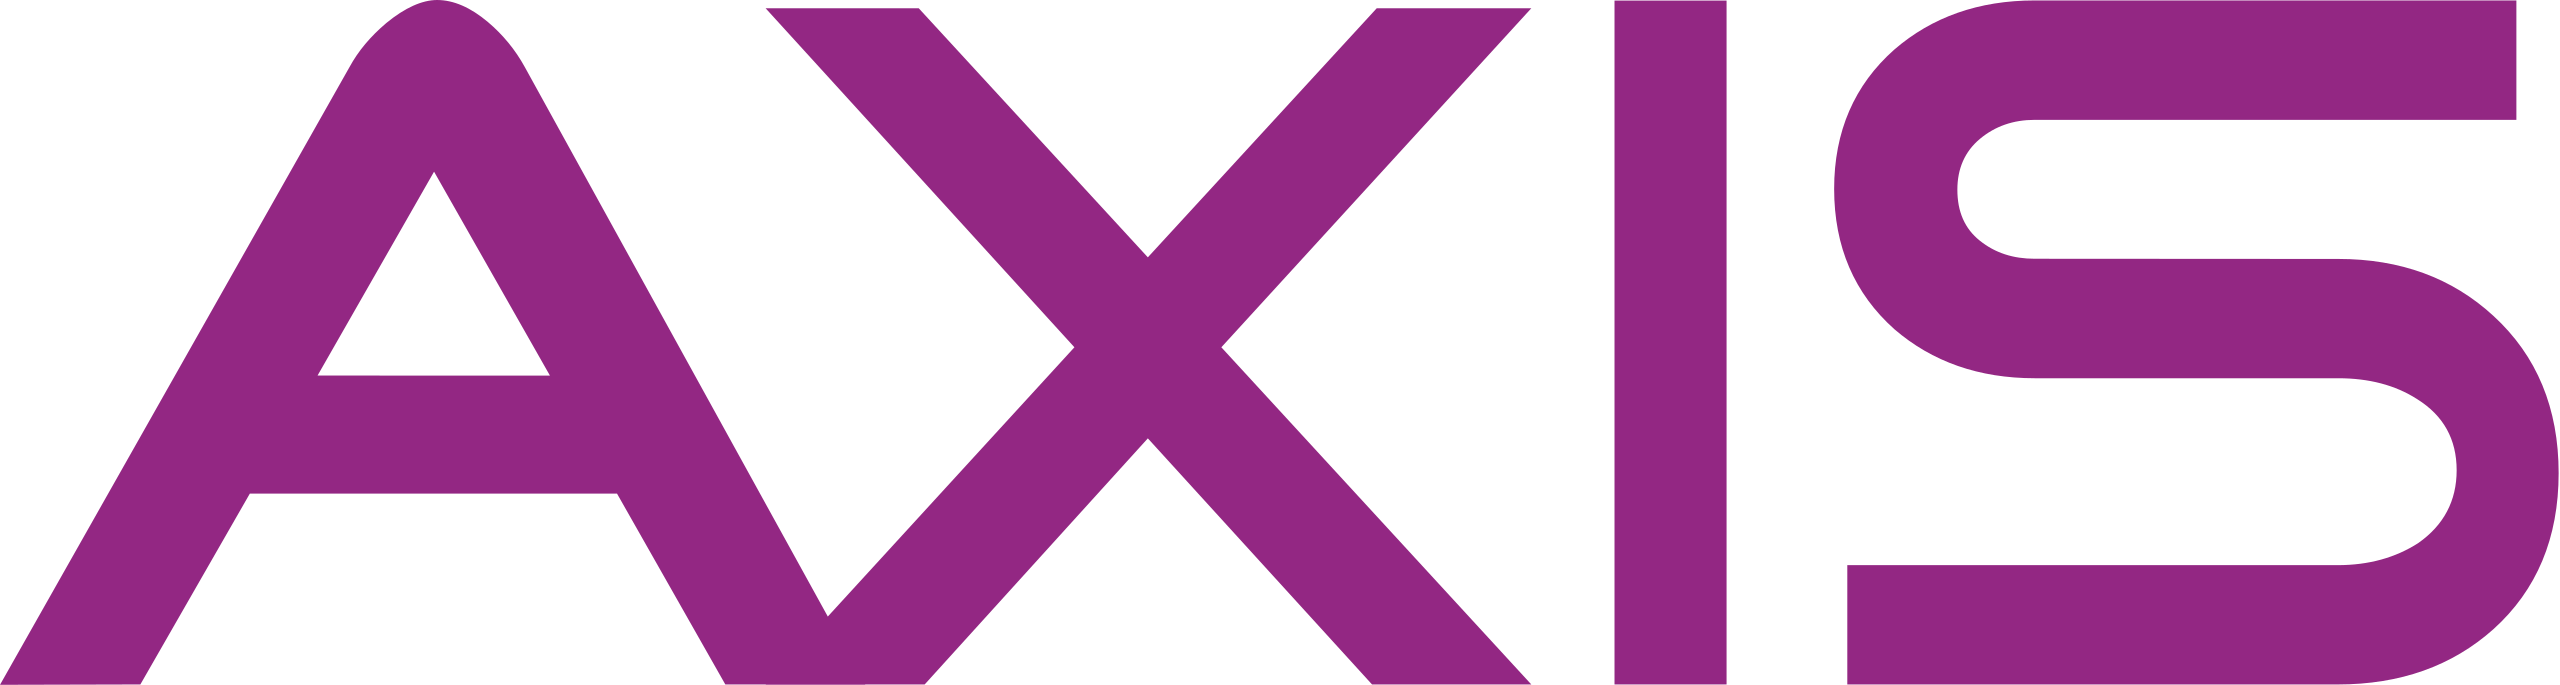 logo operator axis